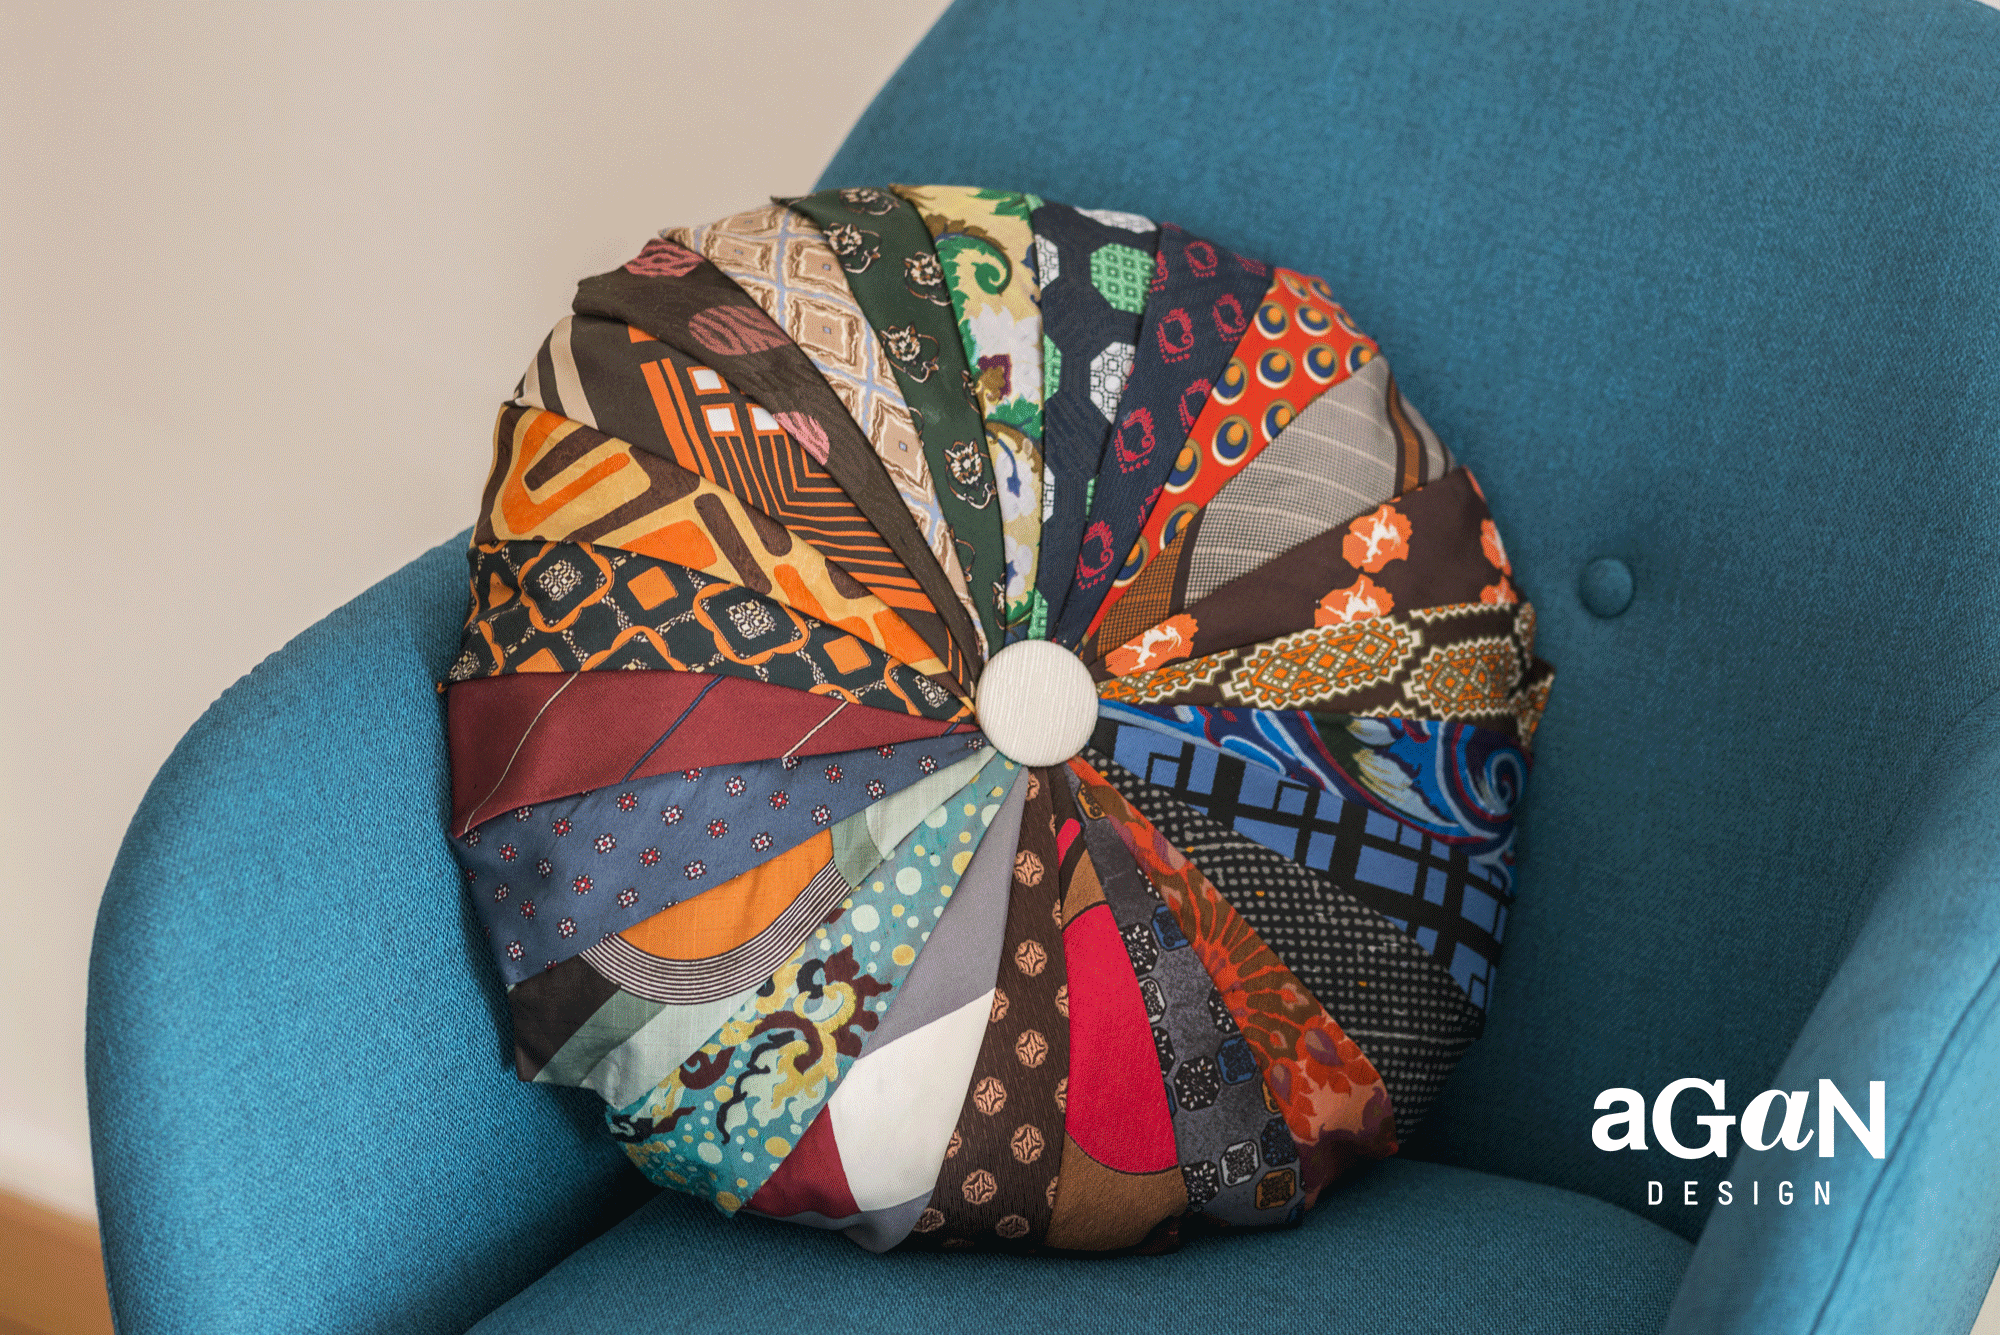 aGaN Design - Cuscino realizzato a mano utilizzando per il rivestimento cravatte in seta.